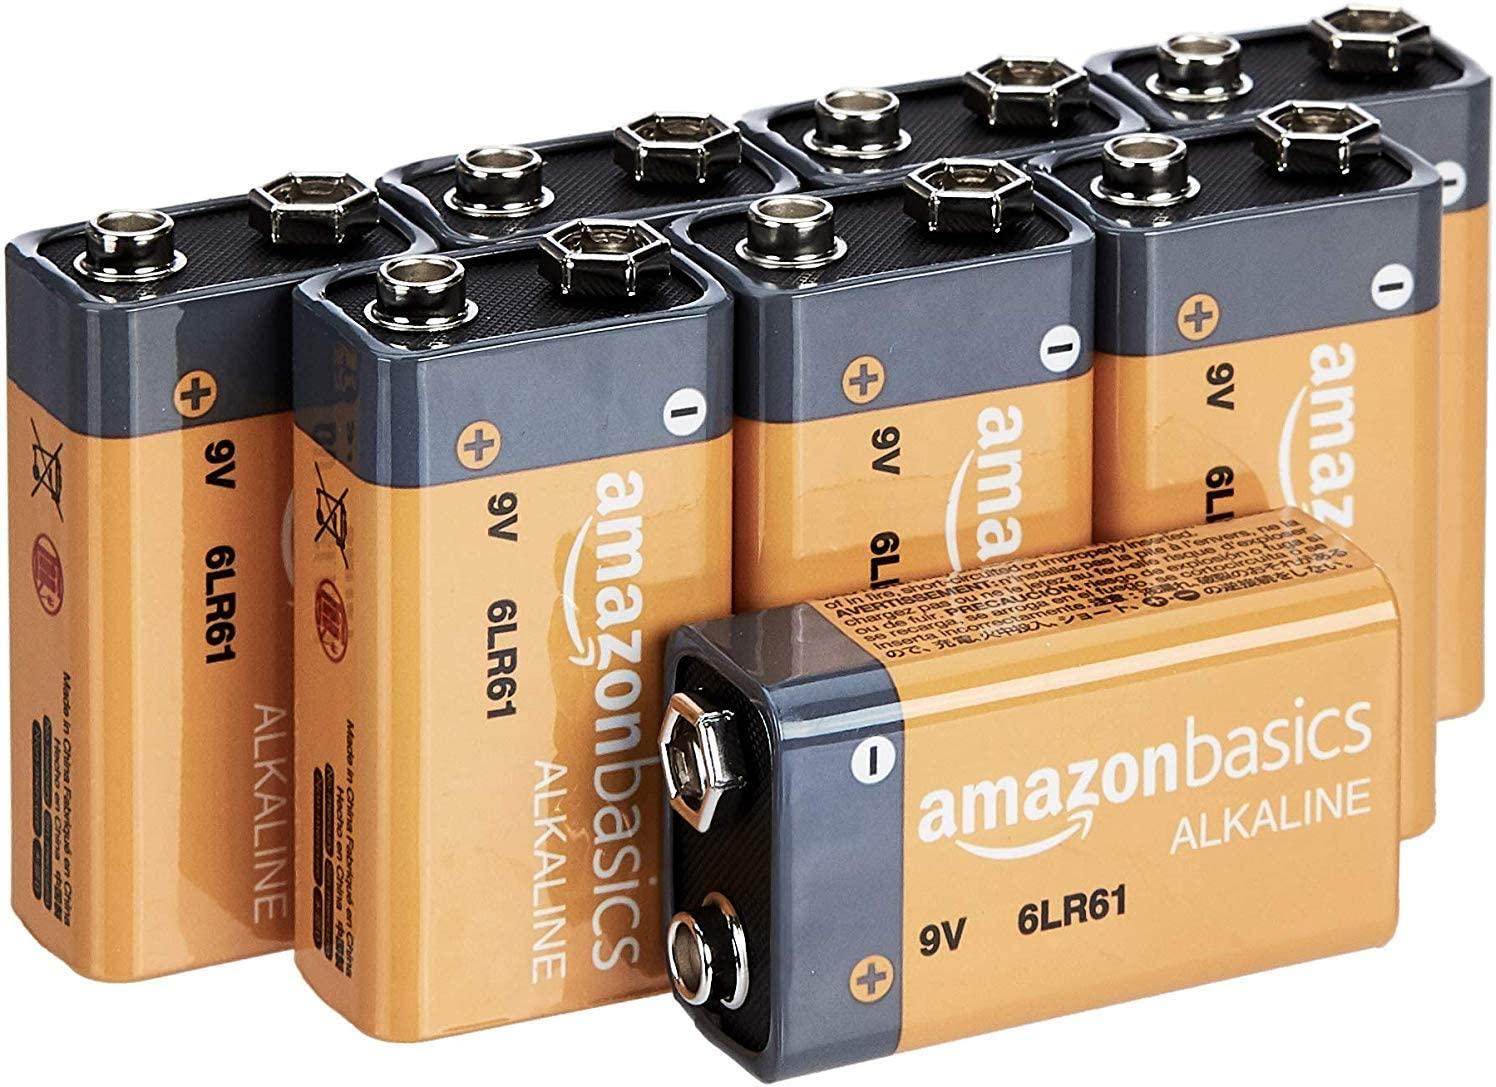 Amazon Basics 9V 9 Volt Alkaline Batteries 8 Pack for $11.39 Shipped